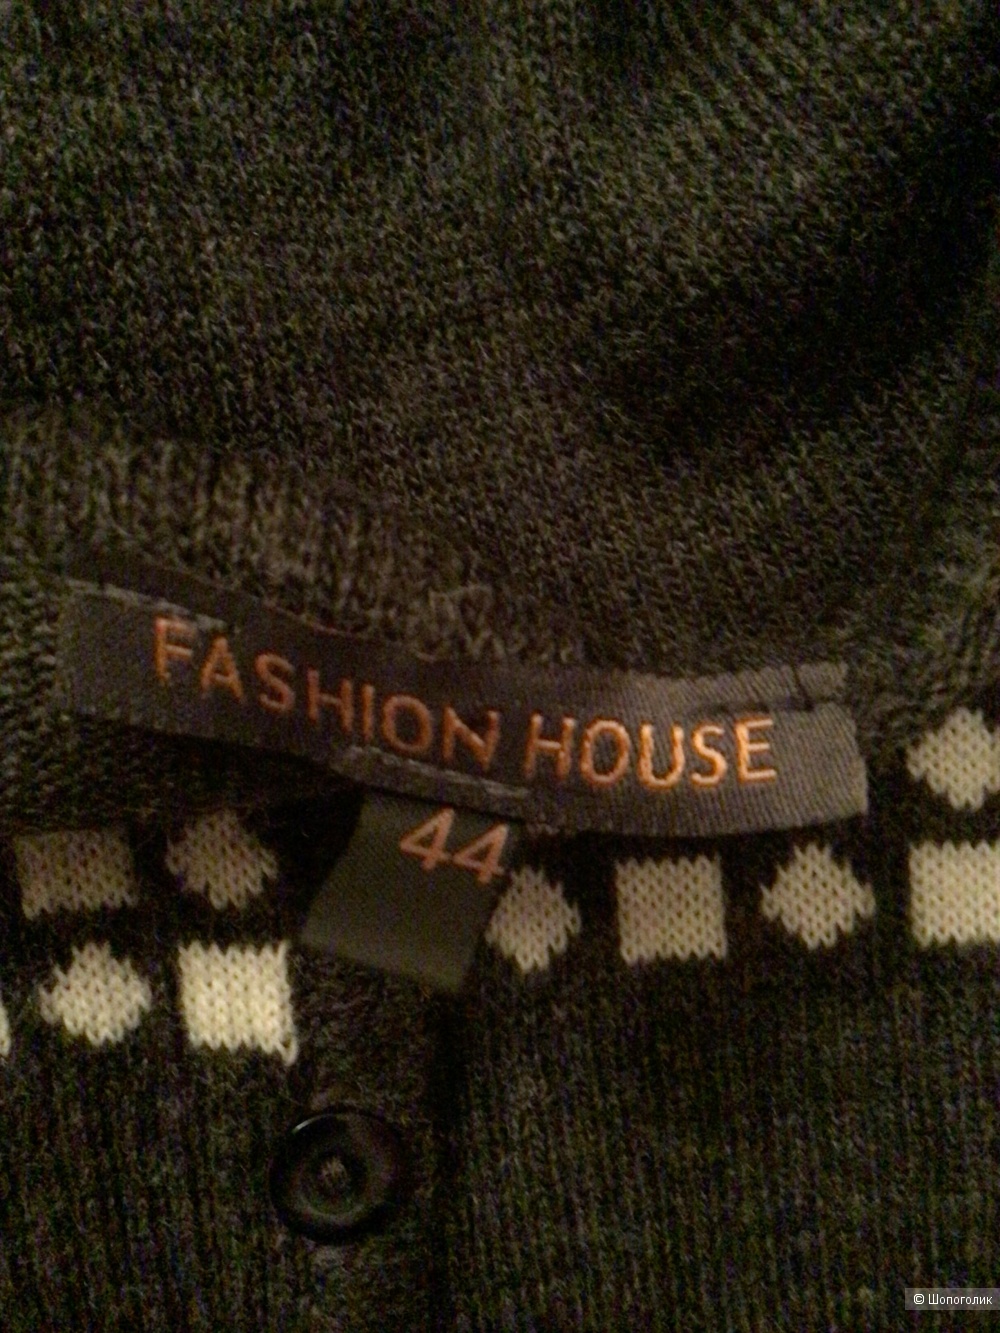 Кардиган Fashion House, 44-46 Росс. Размер